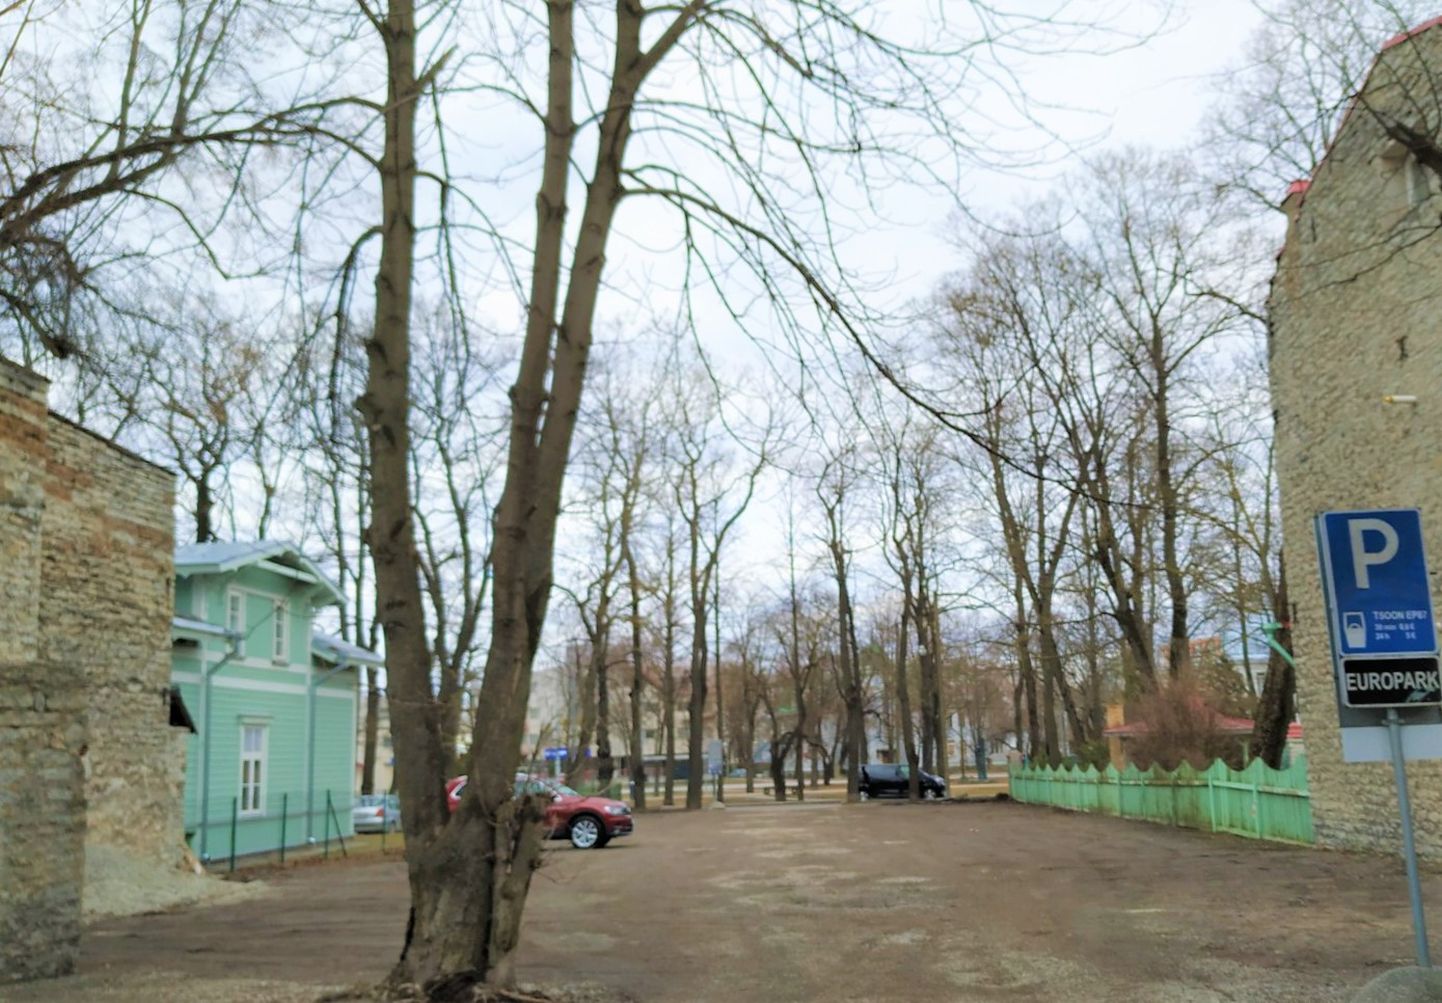 Незастроенный участок земли в Таллинне. Снимок иллюстративный.